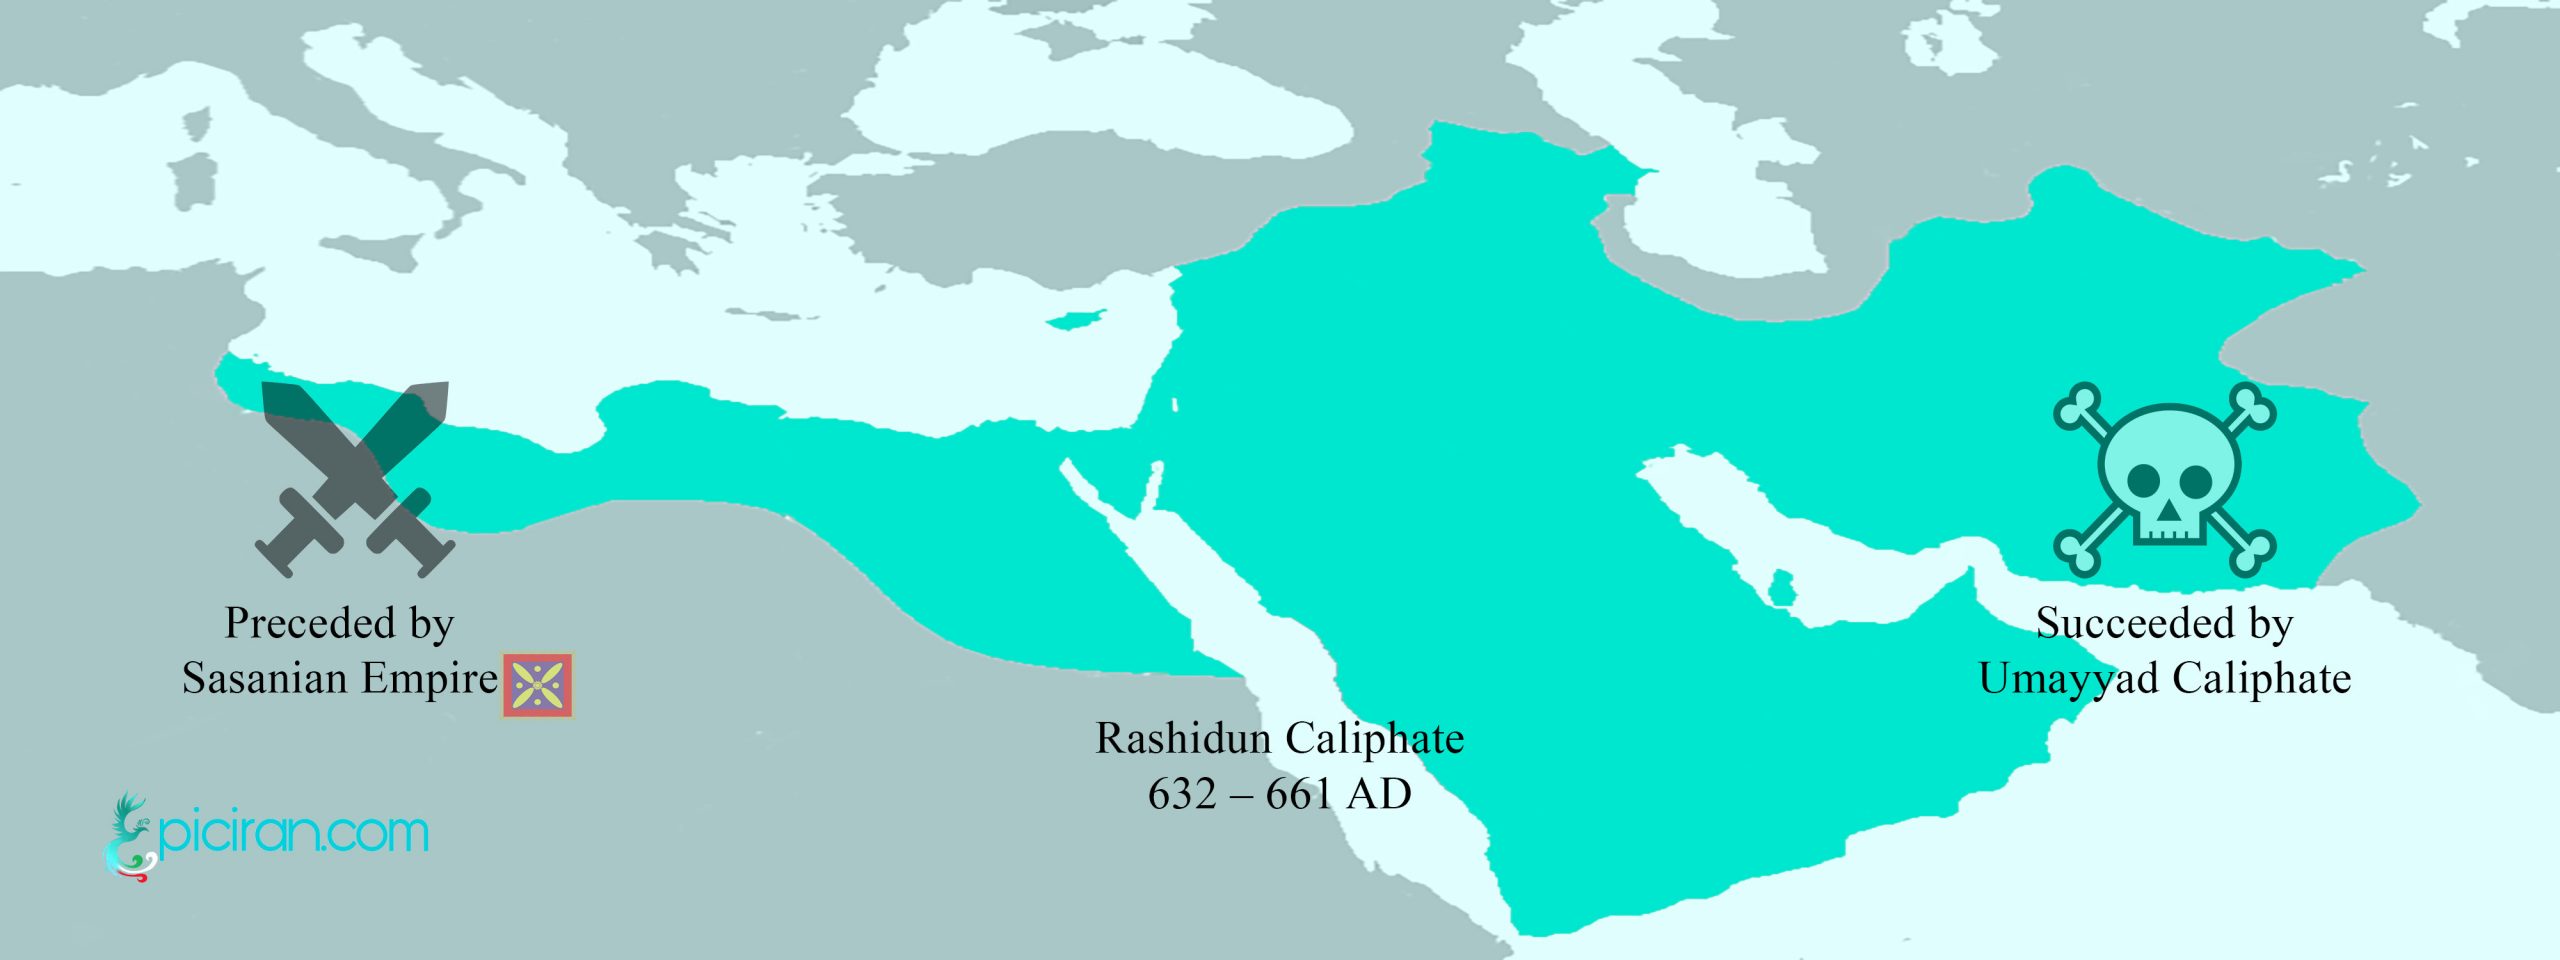 Islam in Iran – The arrival of Islam in Iran by the Rashidun caliphate